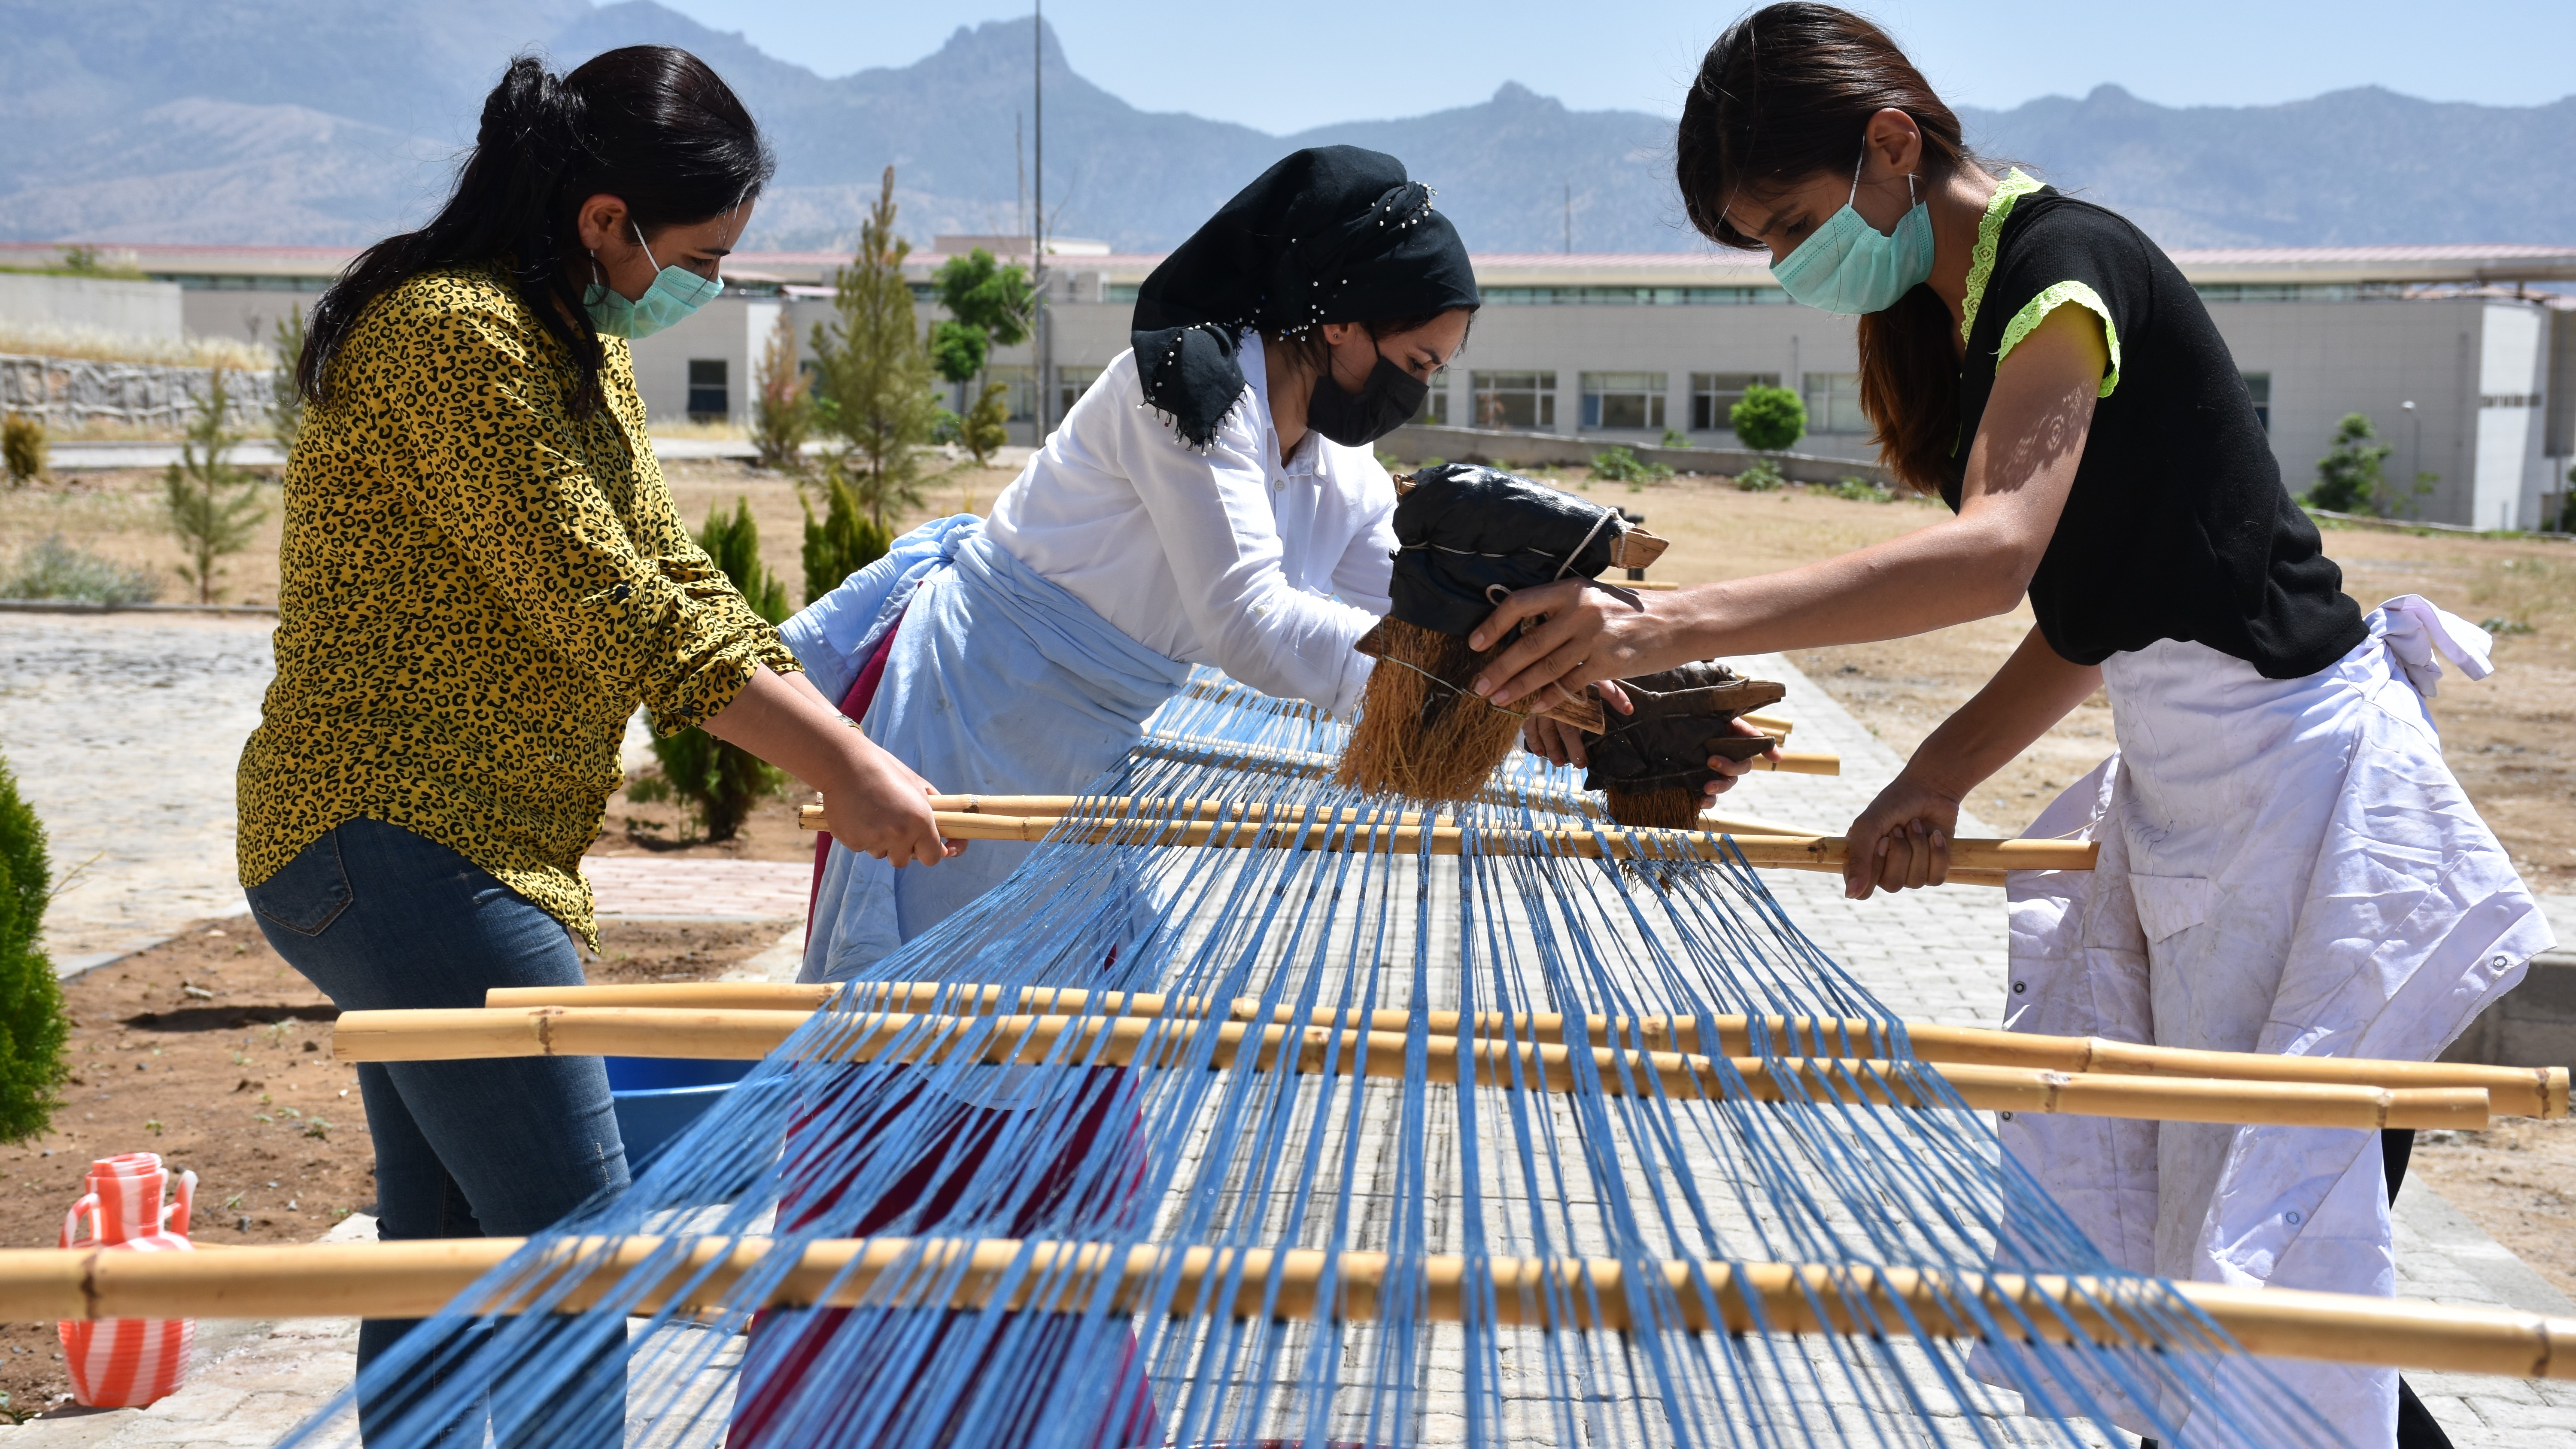 Şal şapik kumaşının üretimi gelecek nesillere aktarılıyor